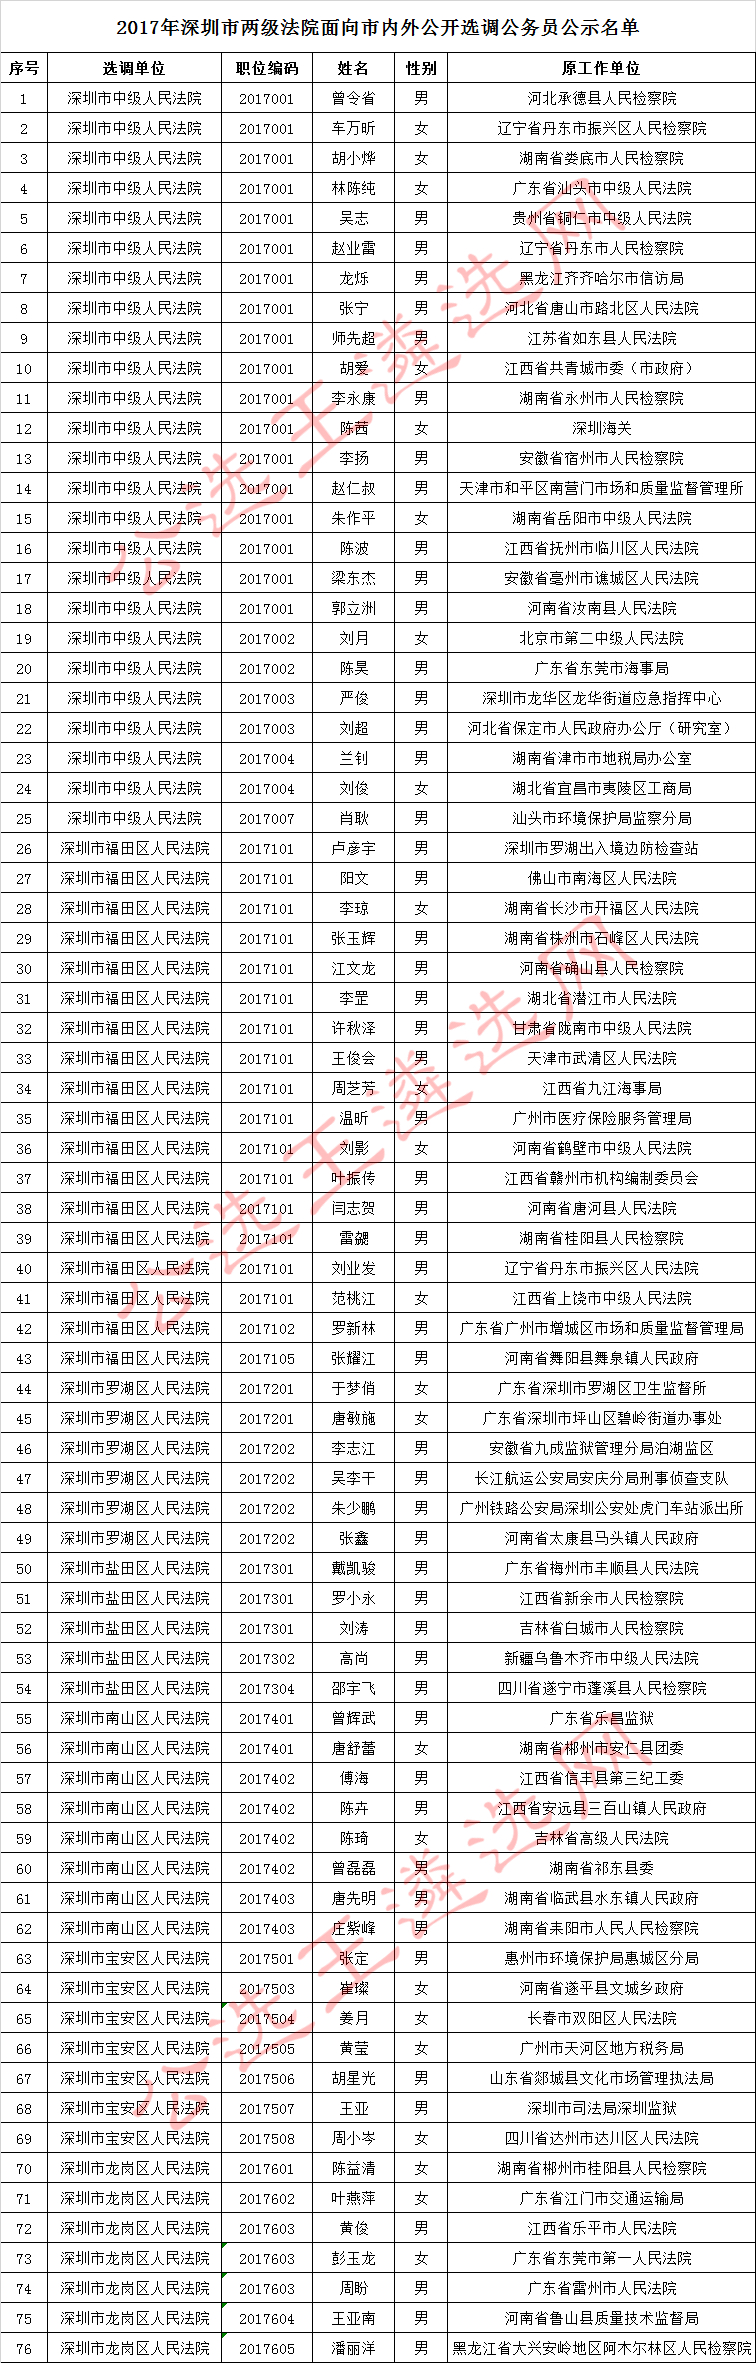 2017年深圳市两级法院面向市内外公开选调公务员公示名单.jpg